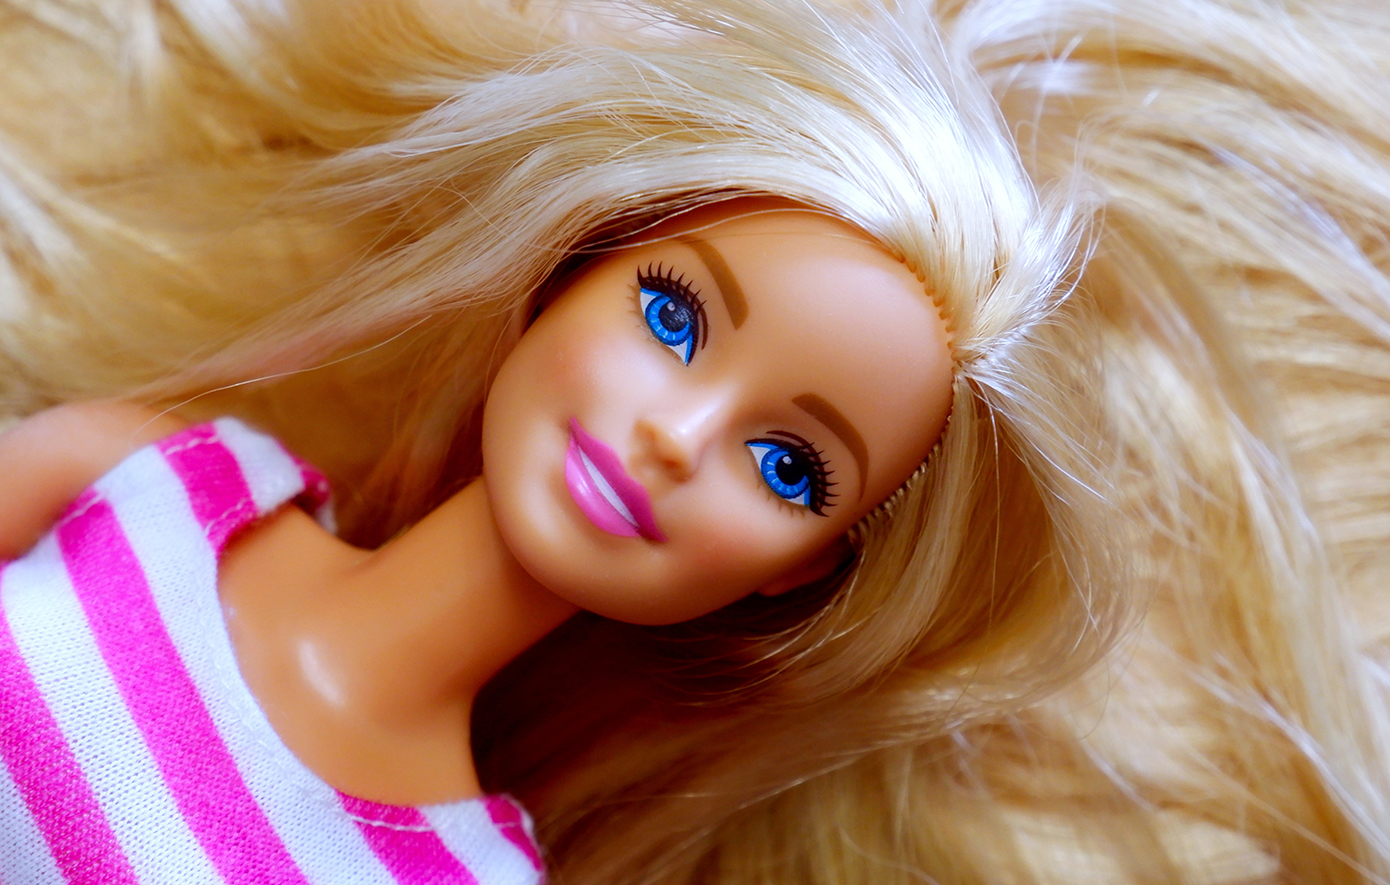 Παράξενες αλήθειες για την Barbie που ίσως δεν γνωρίζατε